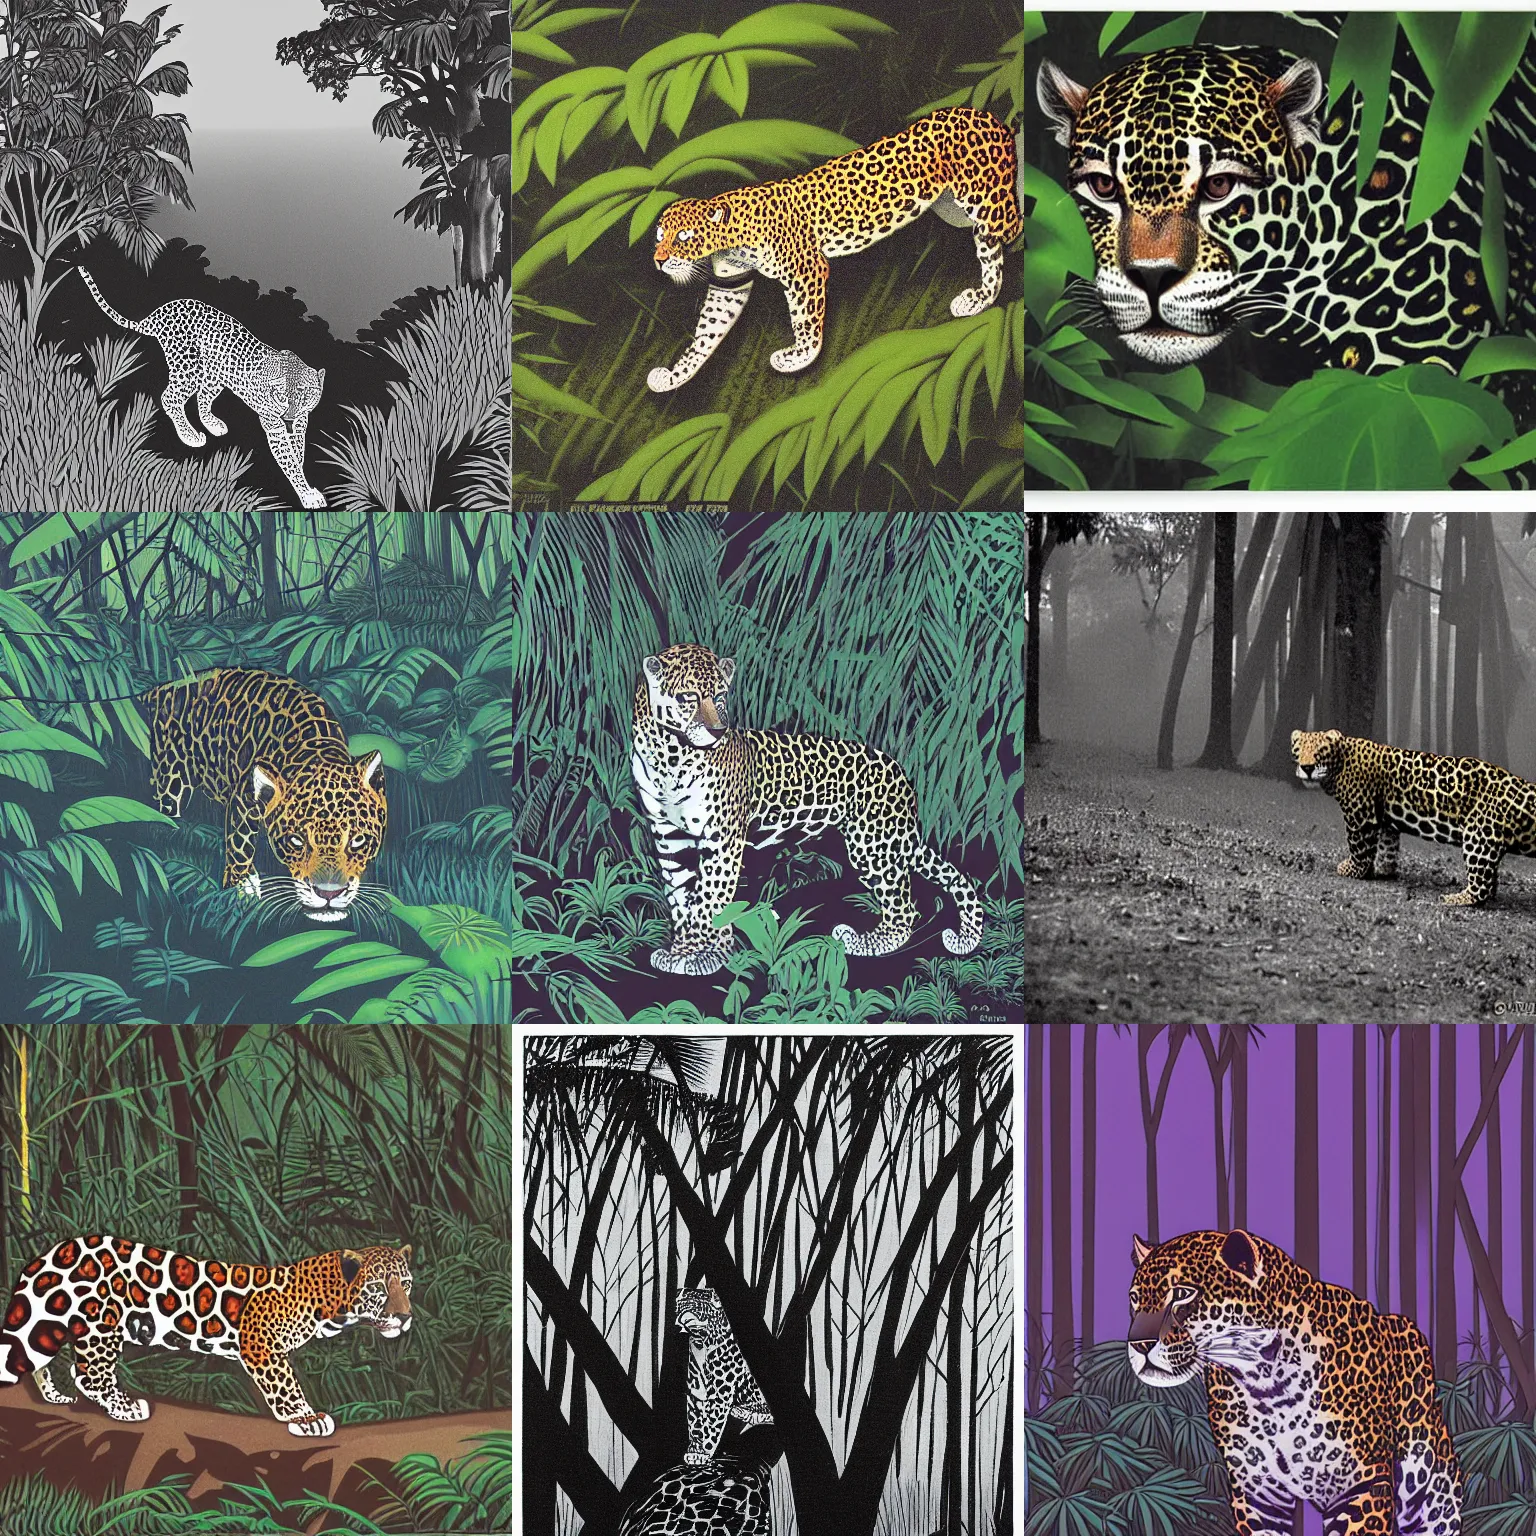 Prompt: intense jaguar in a dark misty jungle, by Hiroshi Nagai